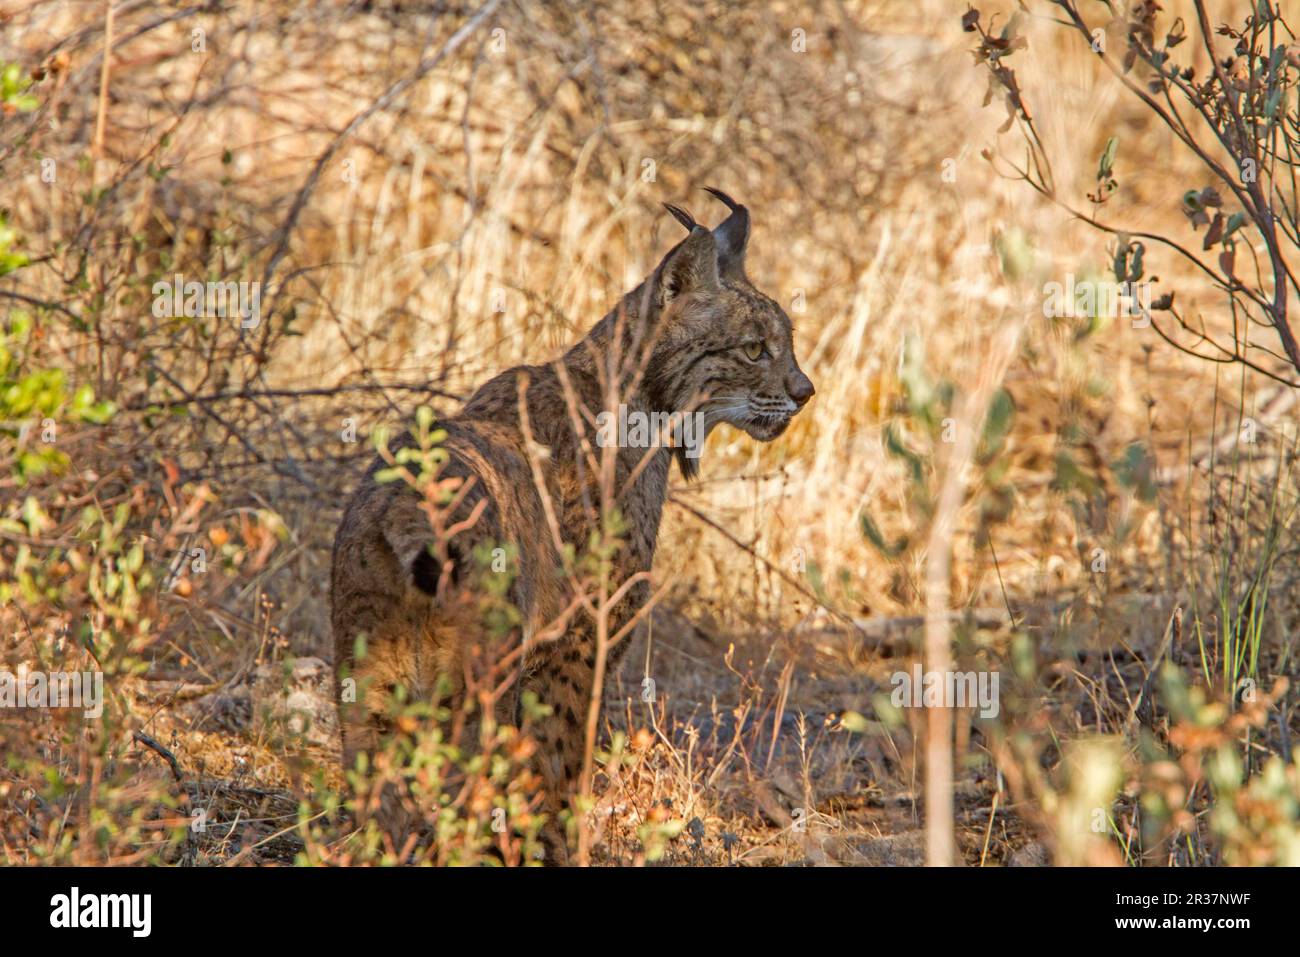 Lynx ibérique (Lynx pardinus), Pardel Lynx, ce qui signifie leopard-tacheté et en effet cet animal a été fortement marqué avec sur tout le corps Banque D'Images